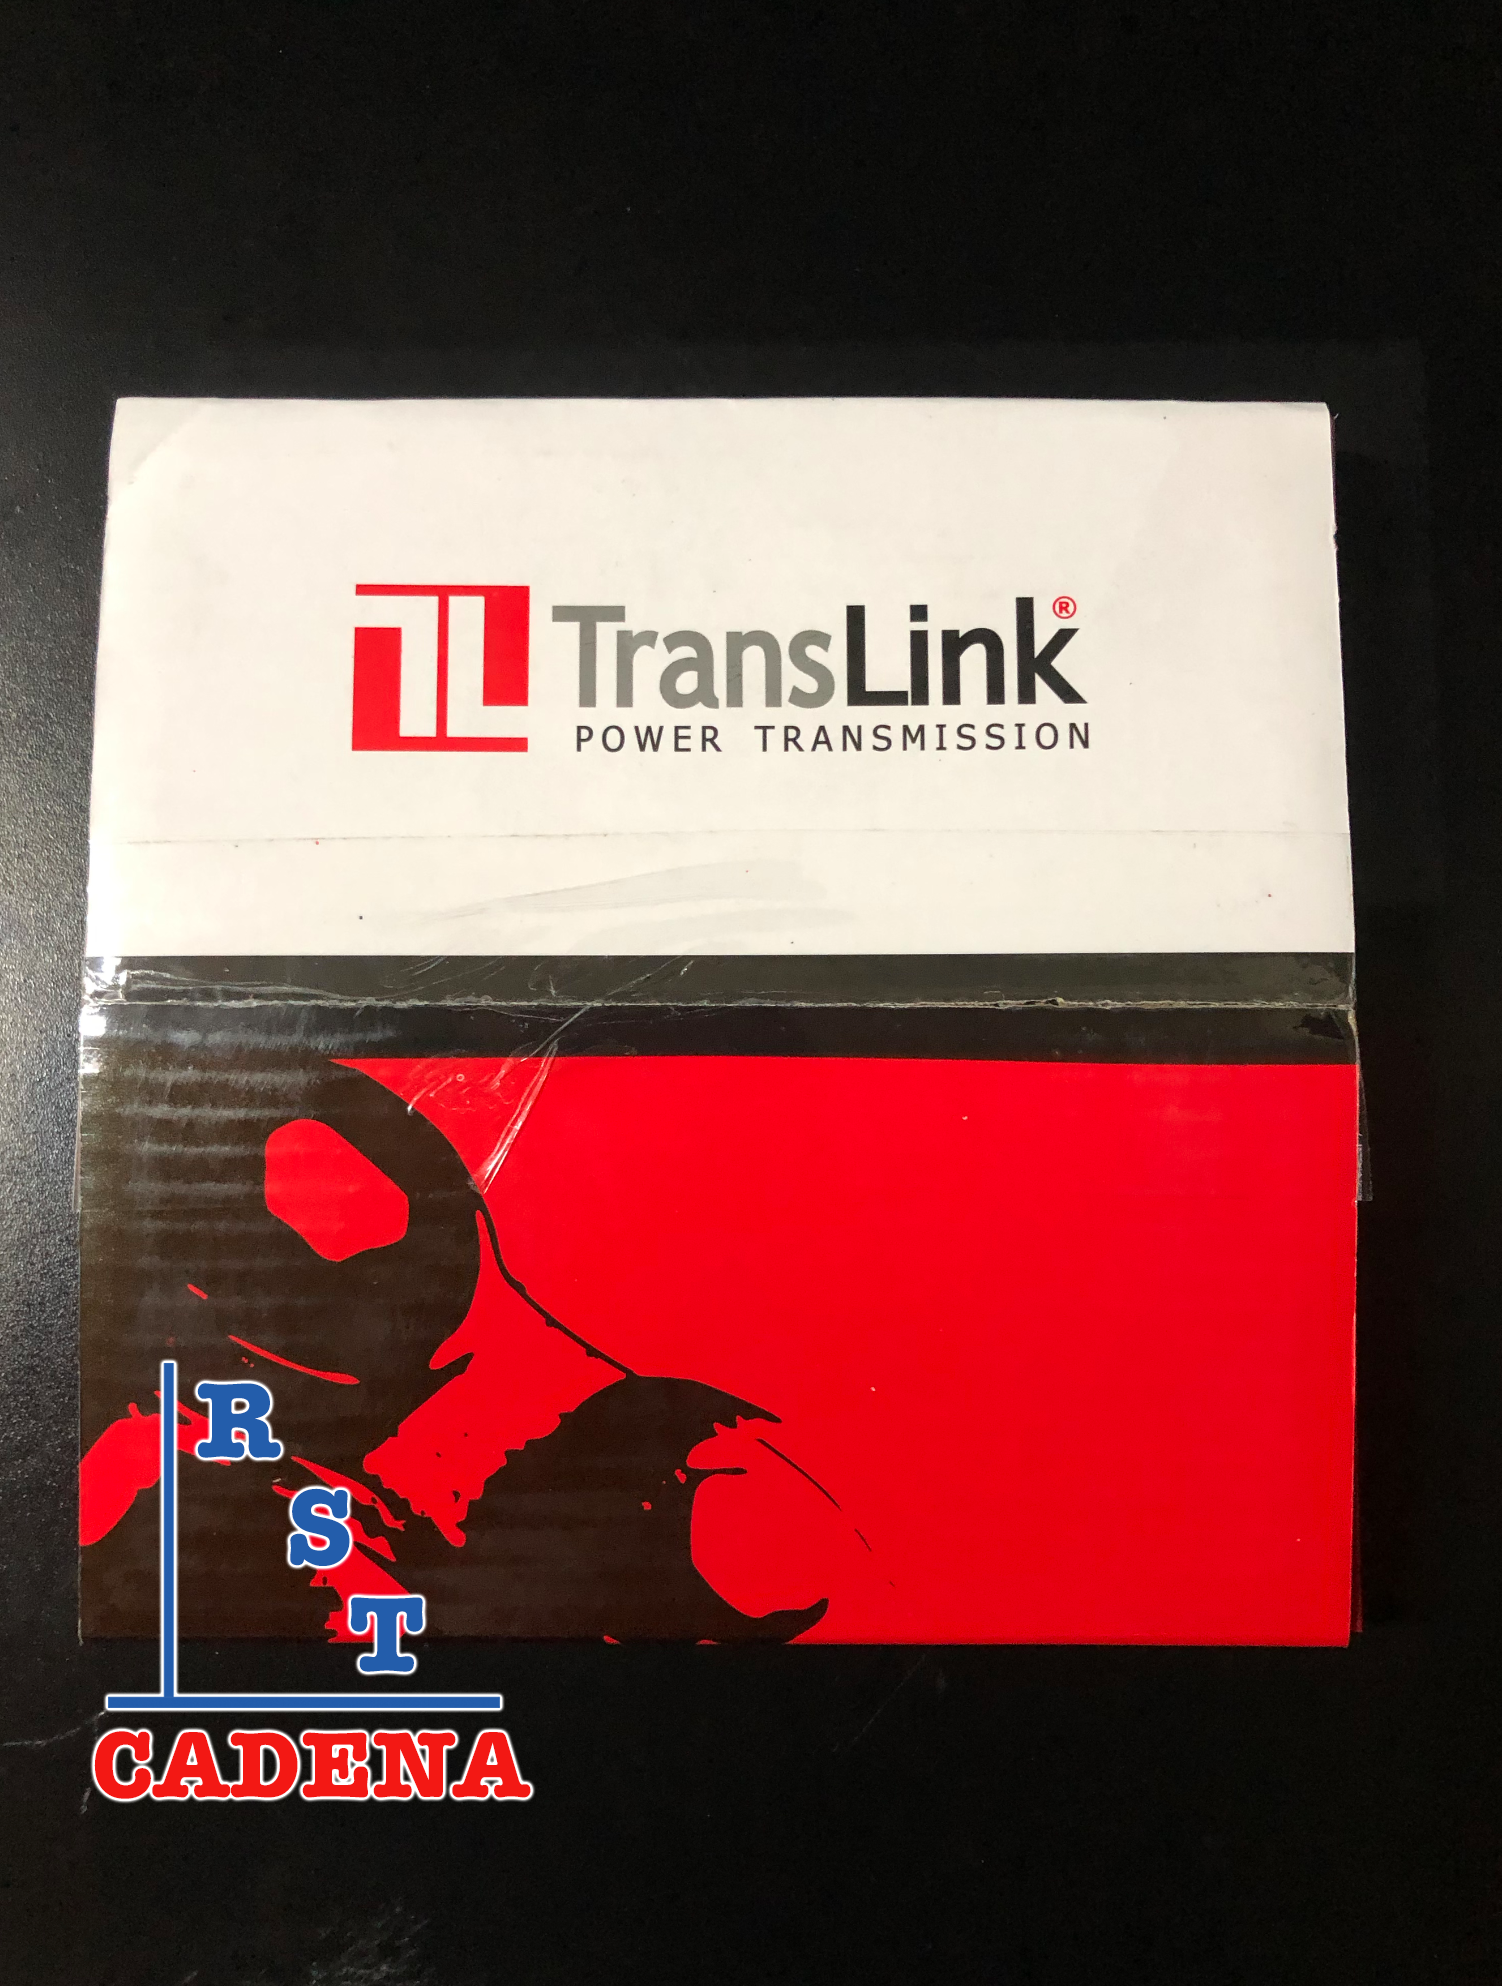 Caja de cadena paso 140-2 TransLink - 0